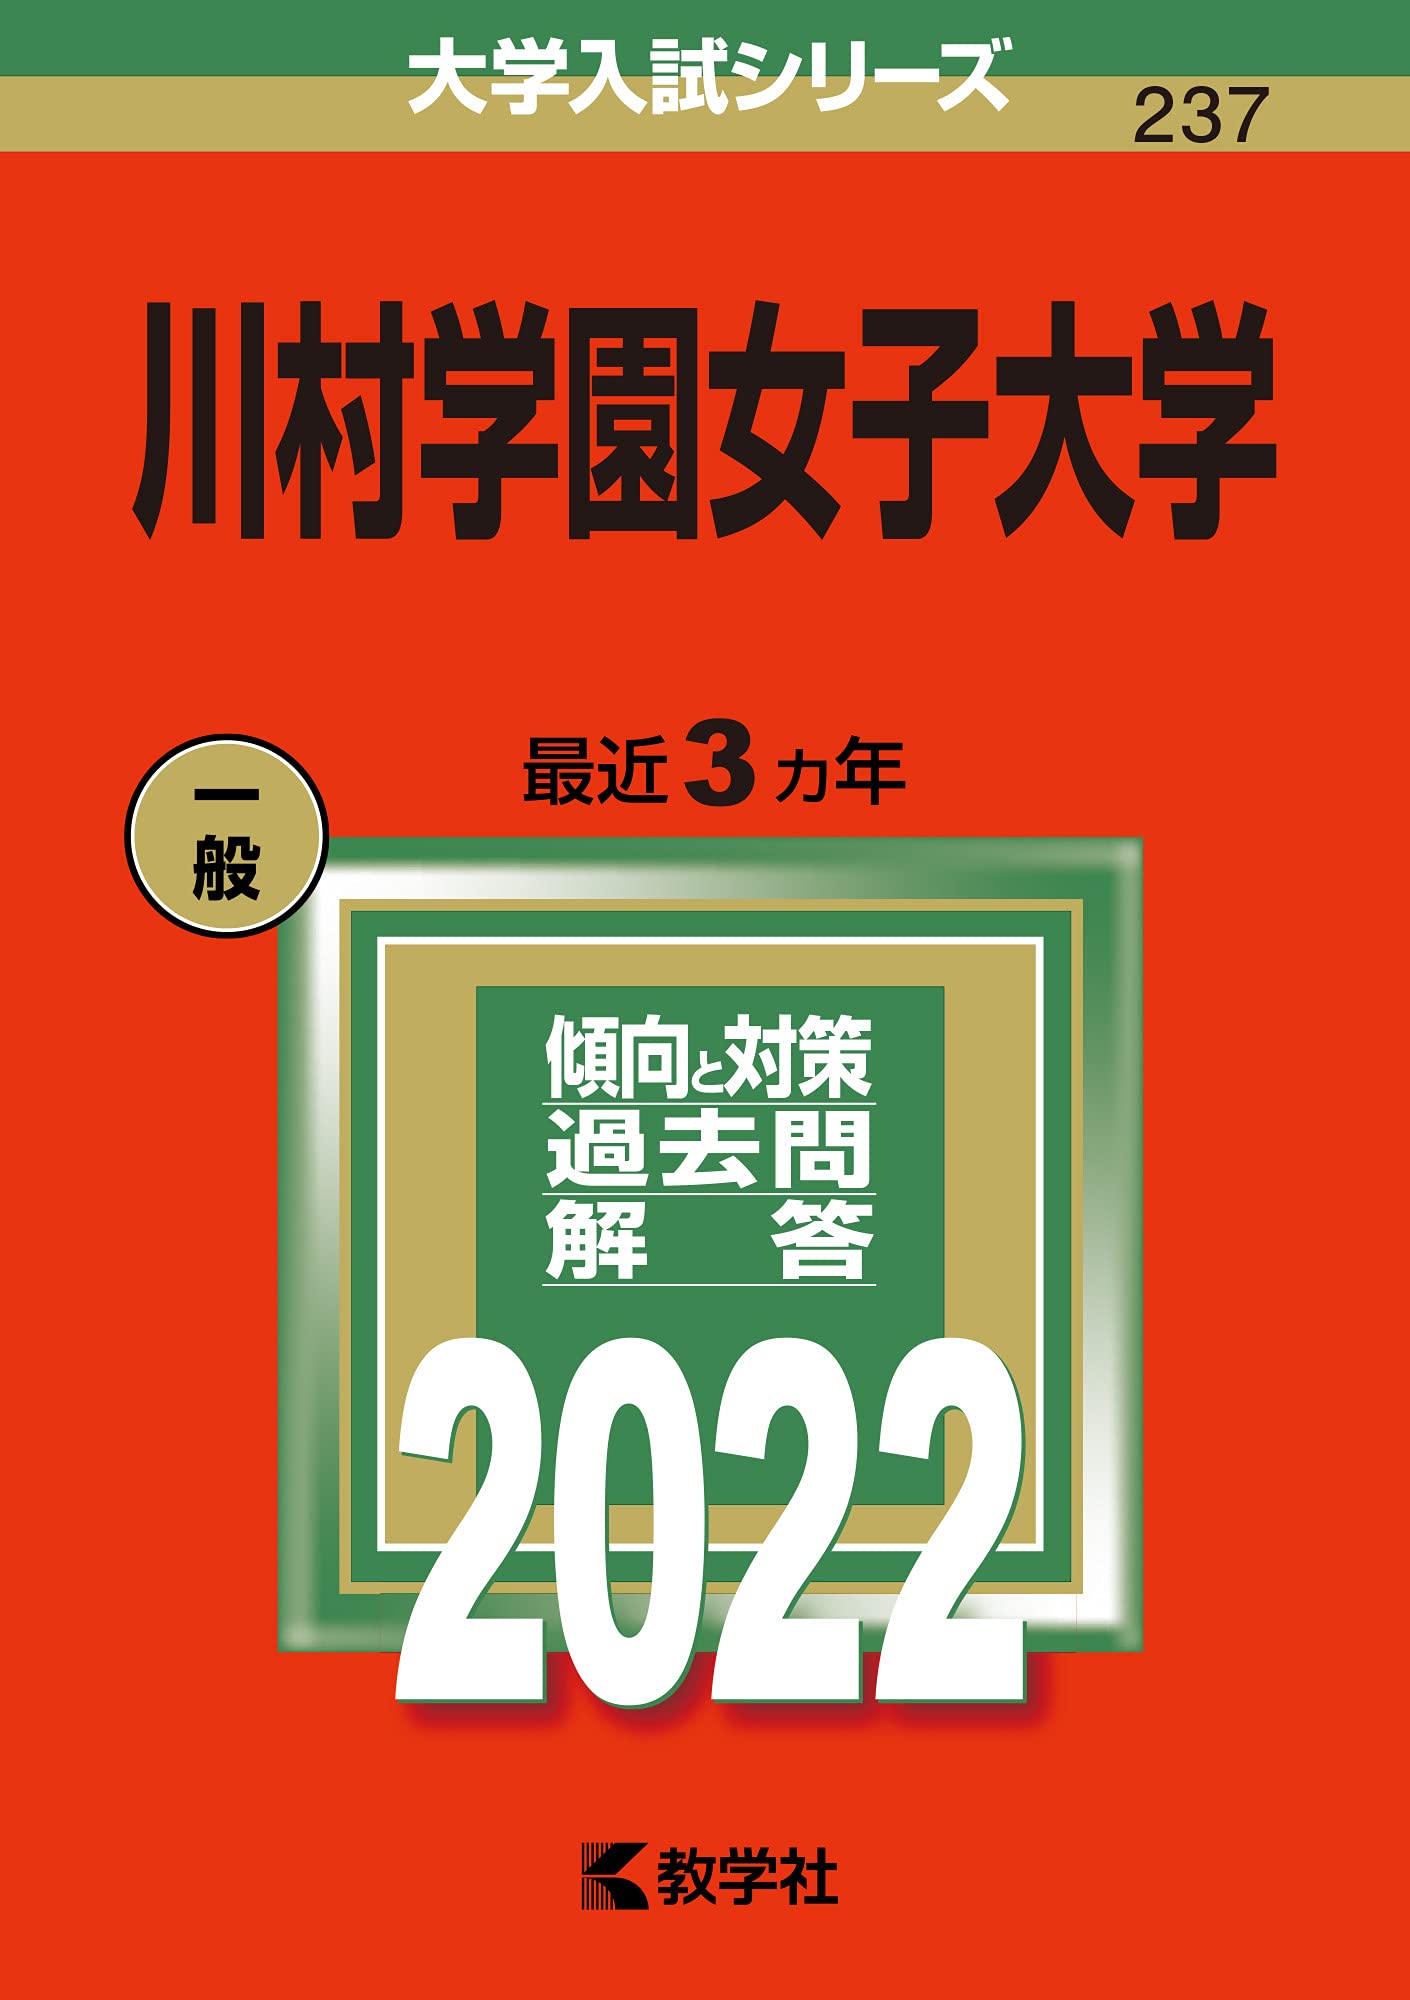 川村學園女子大學 (2022)